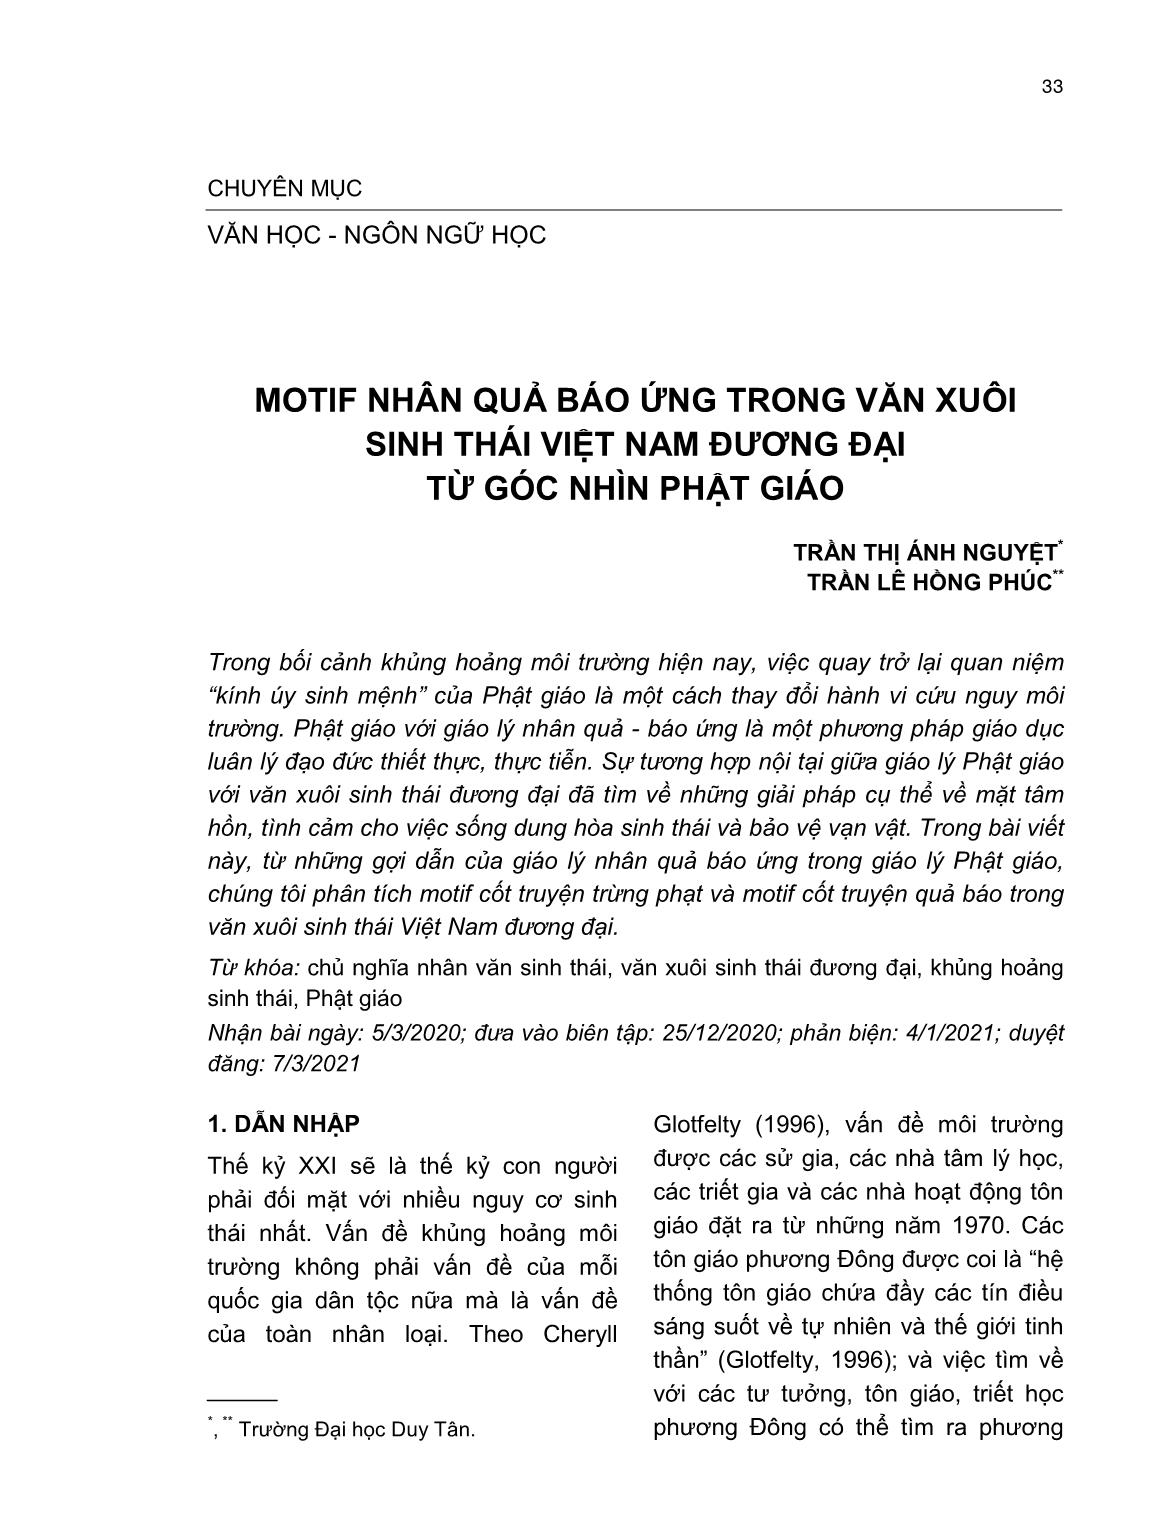 Motif nhân quả báo ứng trong văn xuôi sinh thái Việt Nam đương đại từ góc nhìn Phật Giáo trang 1